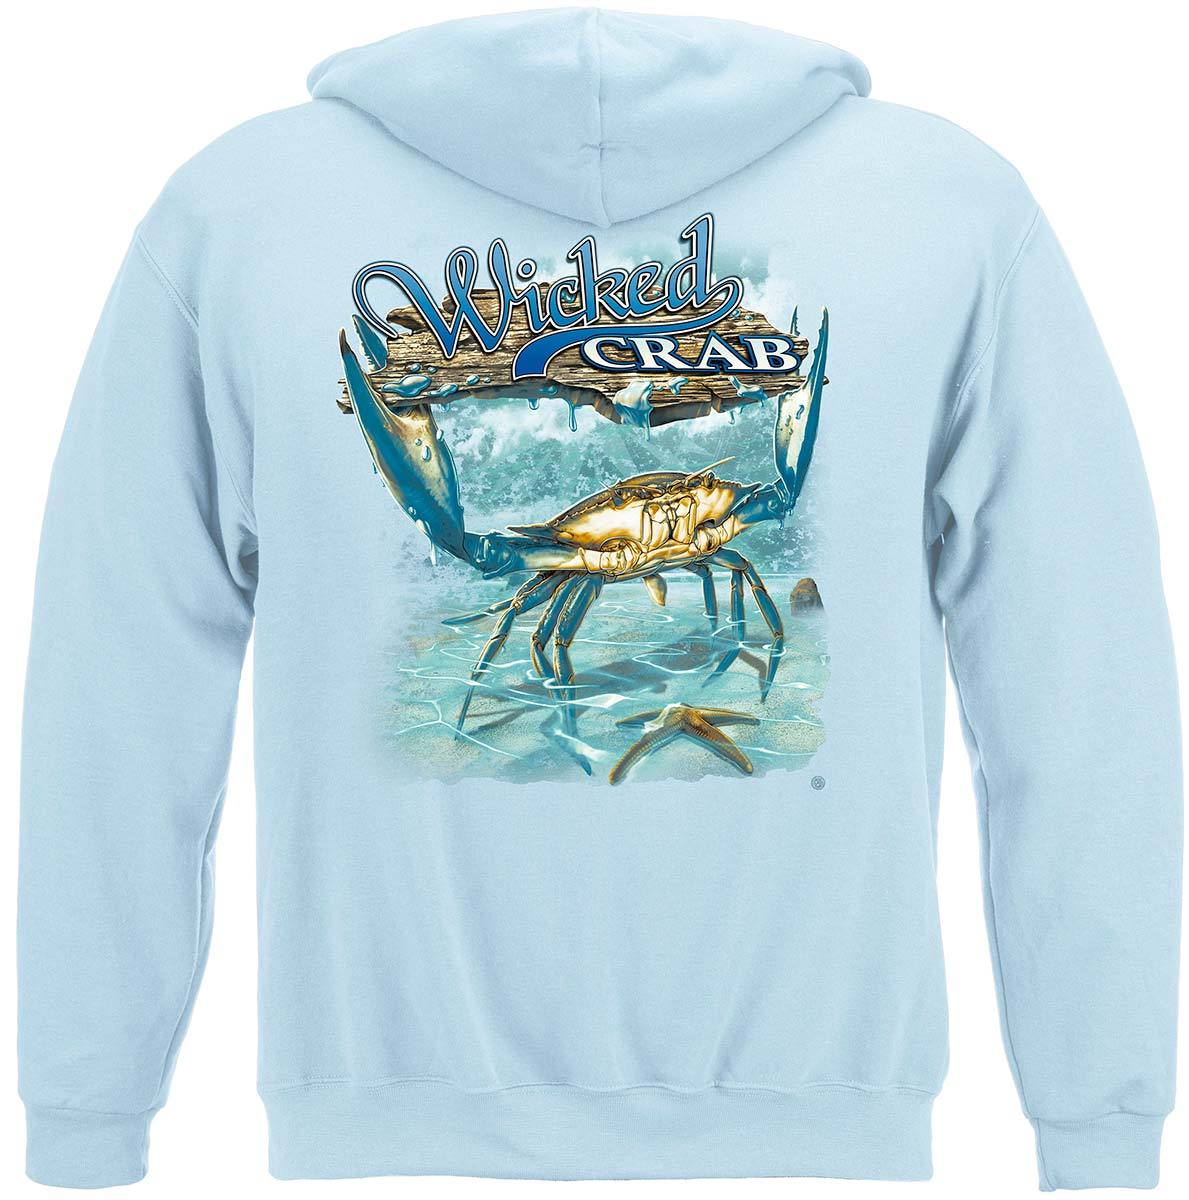 Wicked Fish Crab And Star Fish Premium T-Shirt